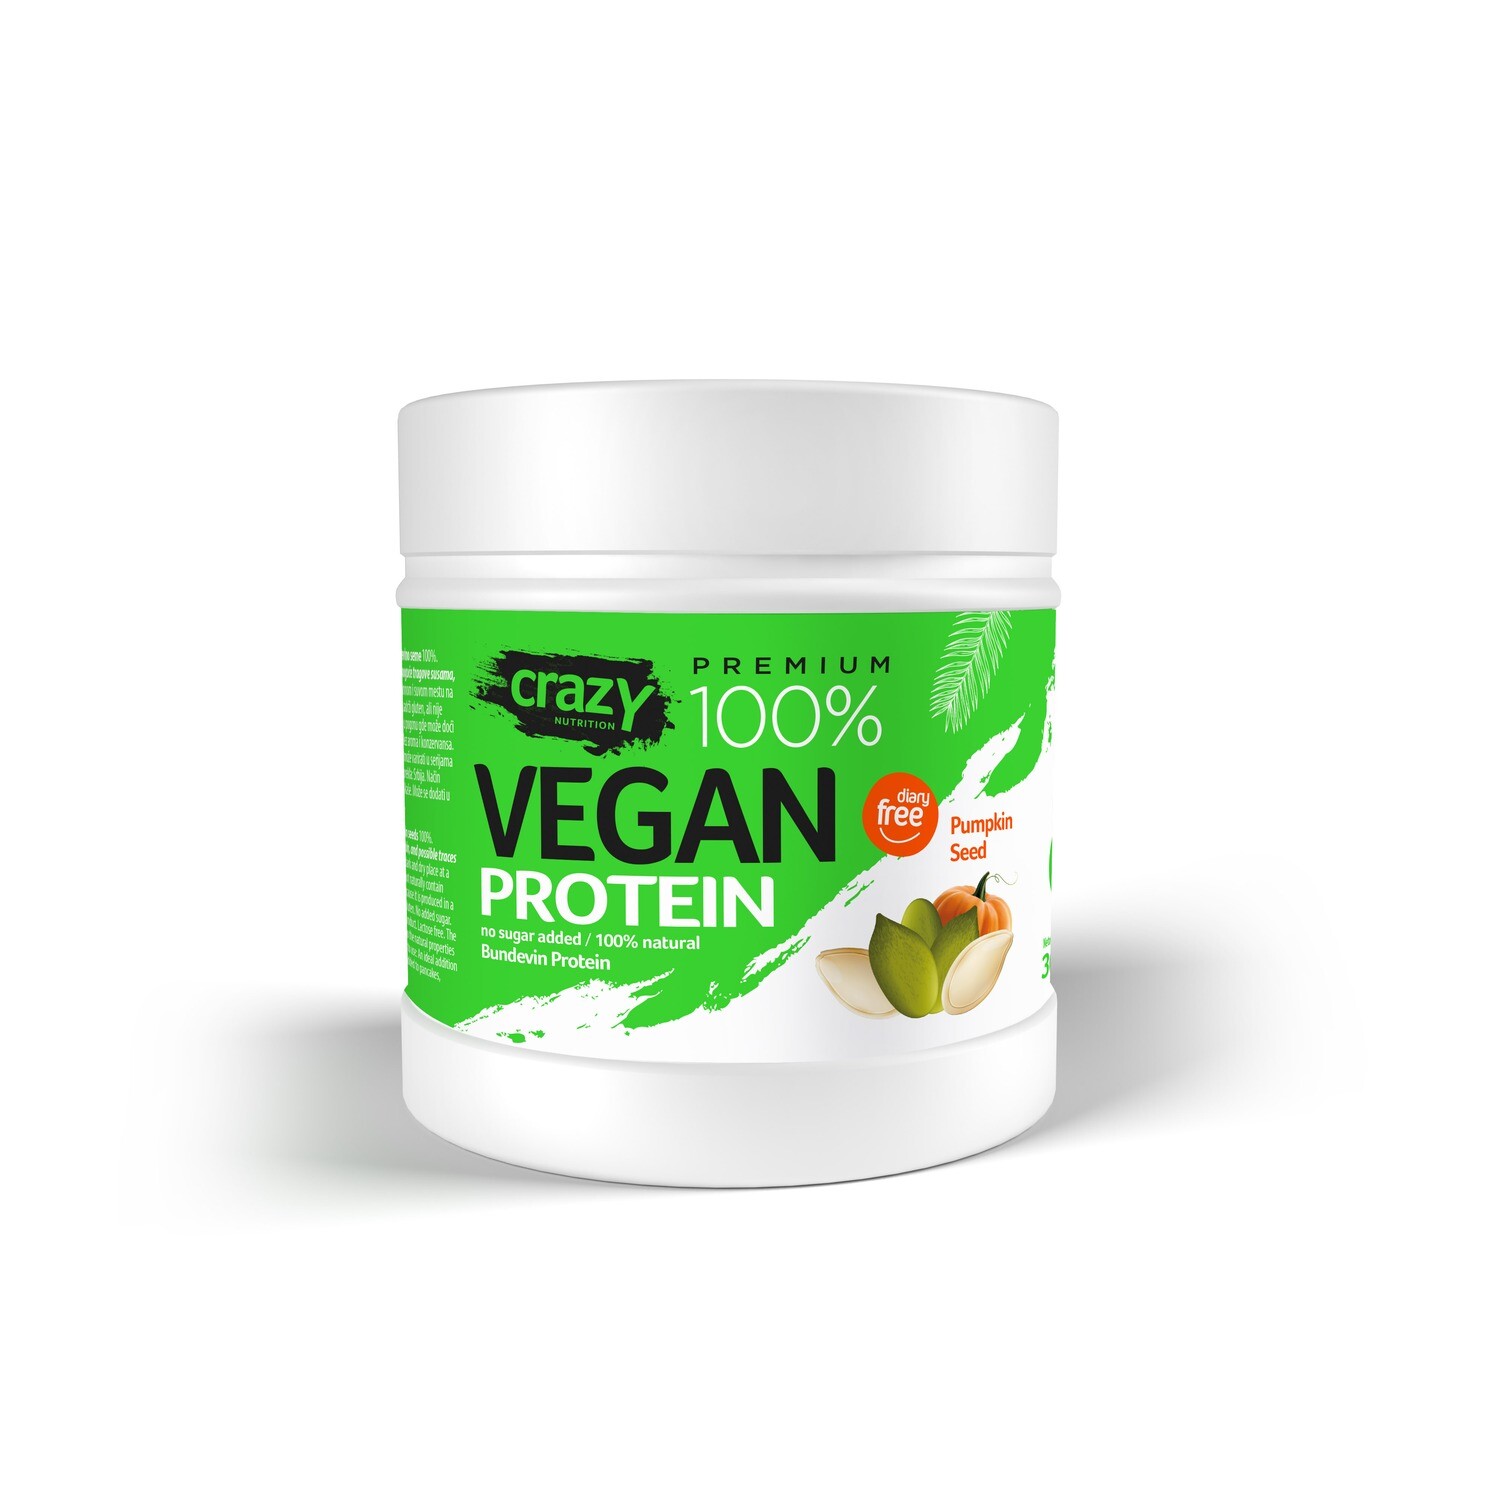 Vegan protein - Bundeva